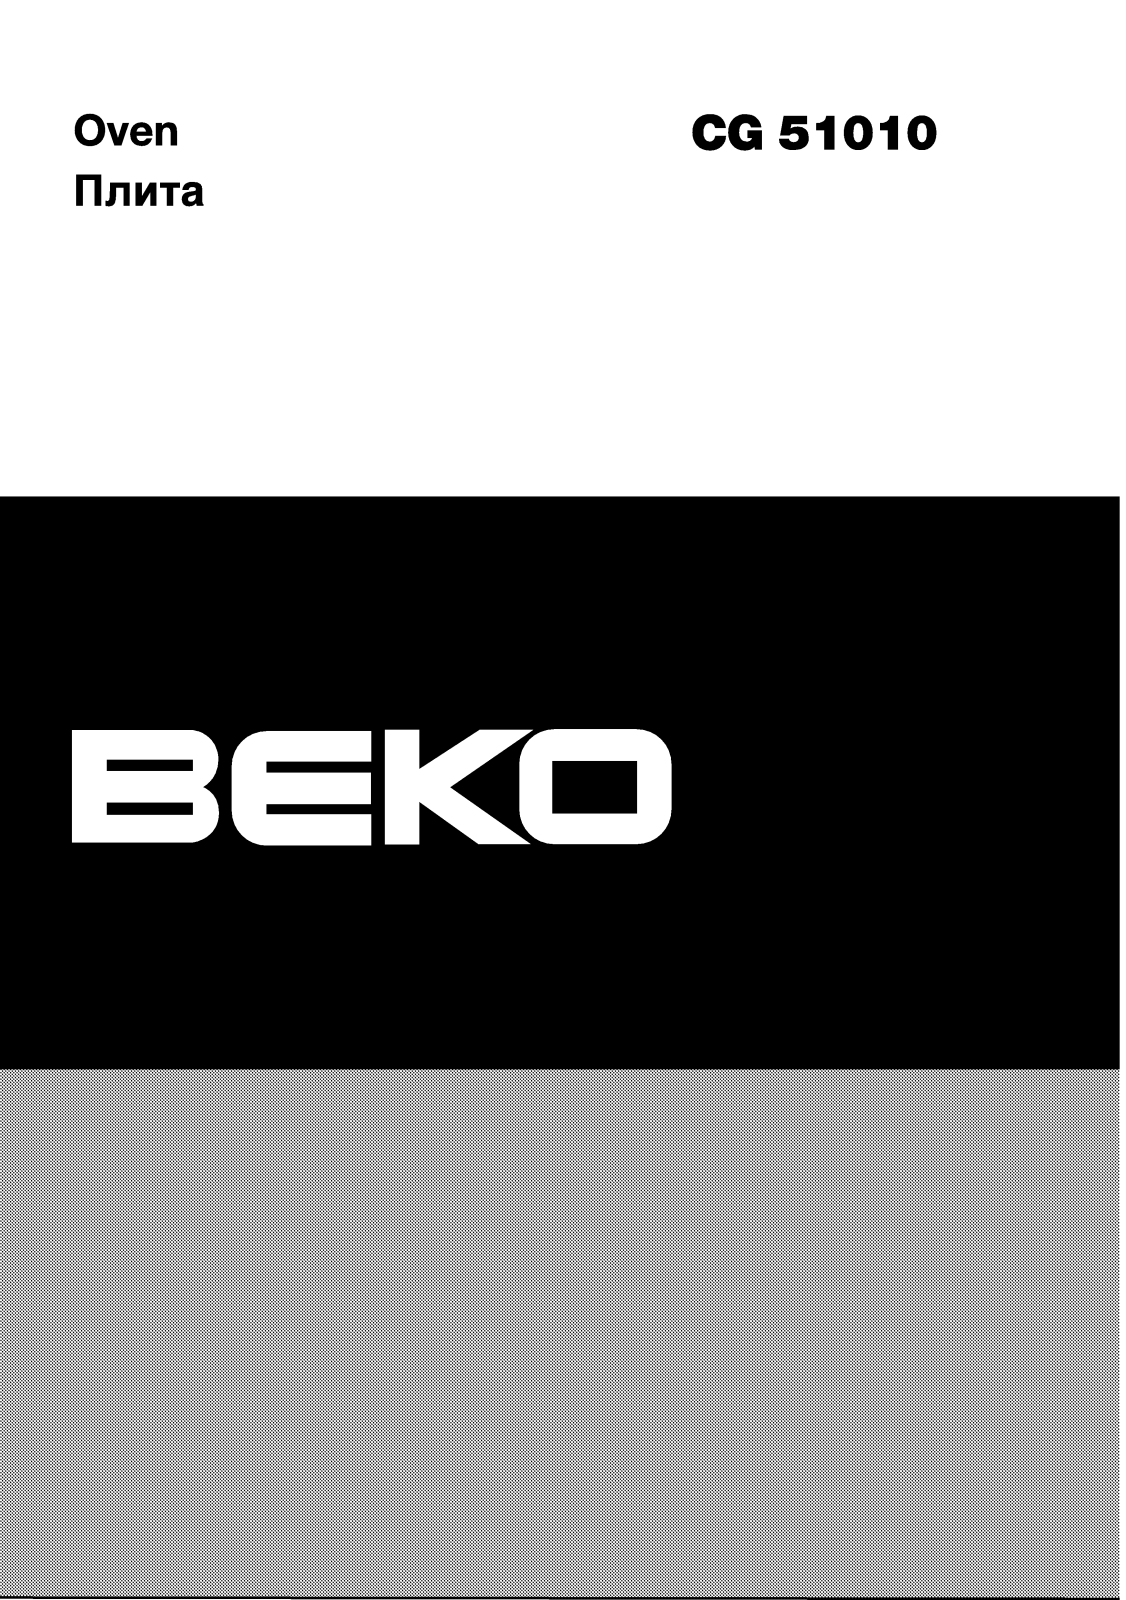 Beko CG 51010 User Manual